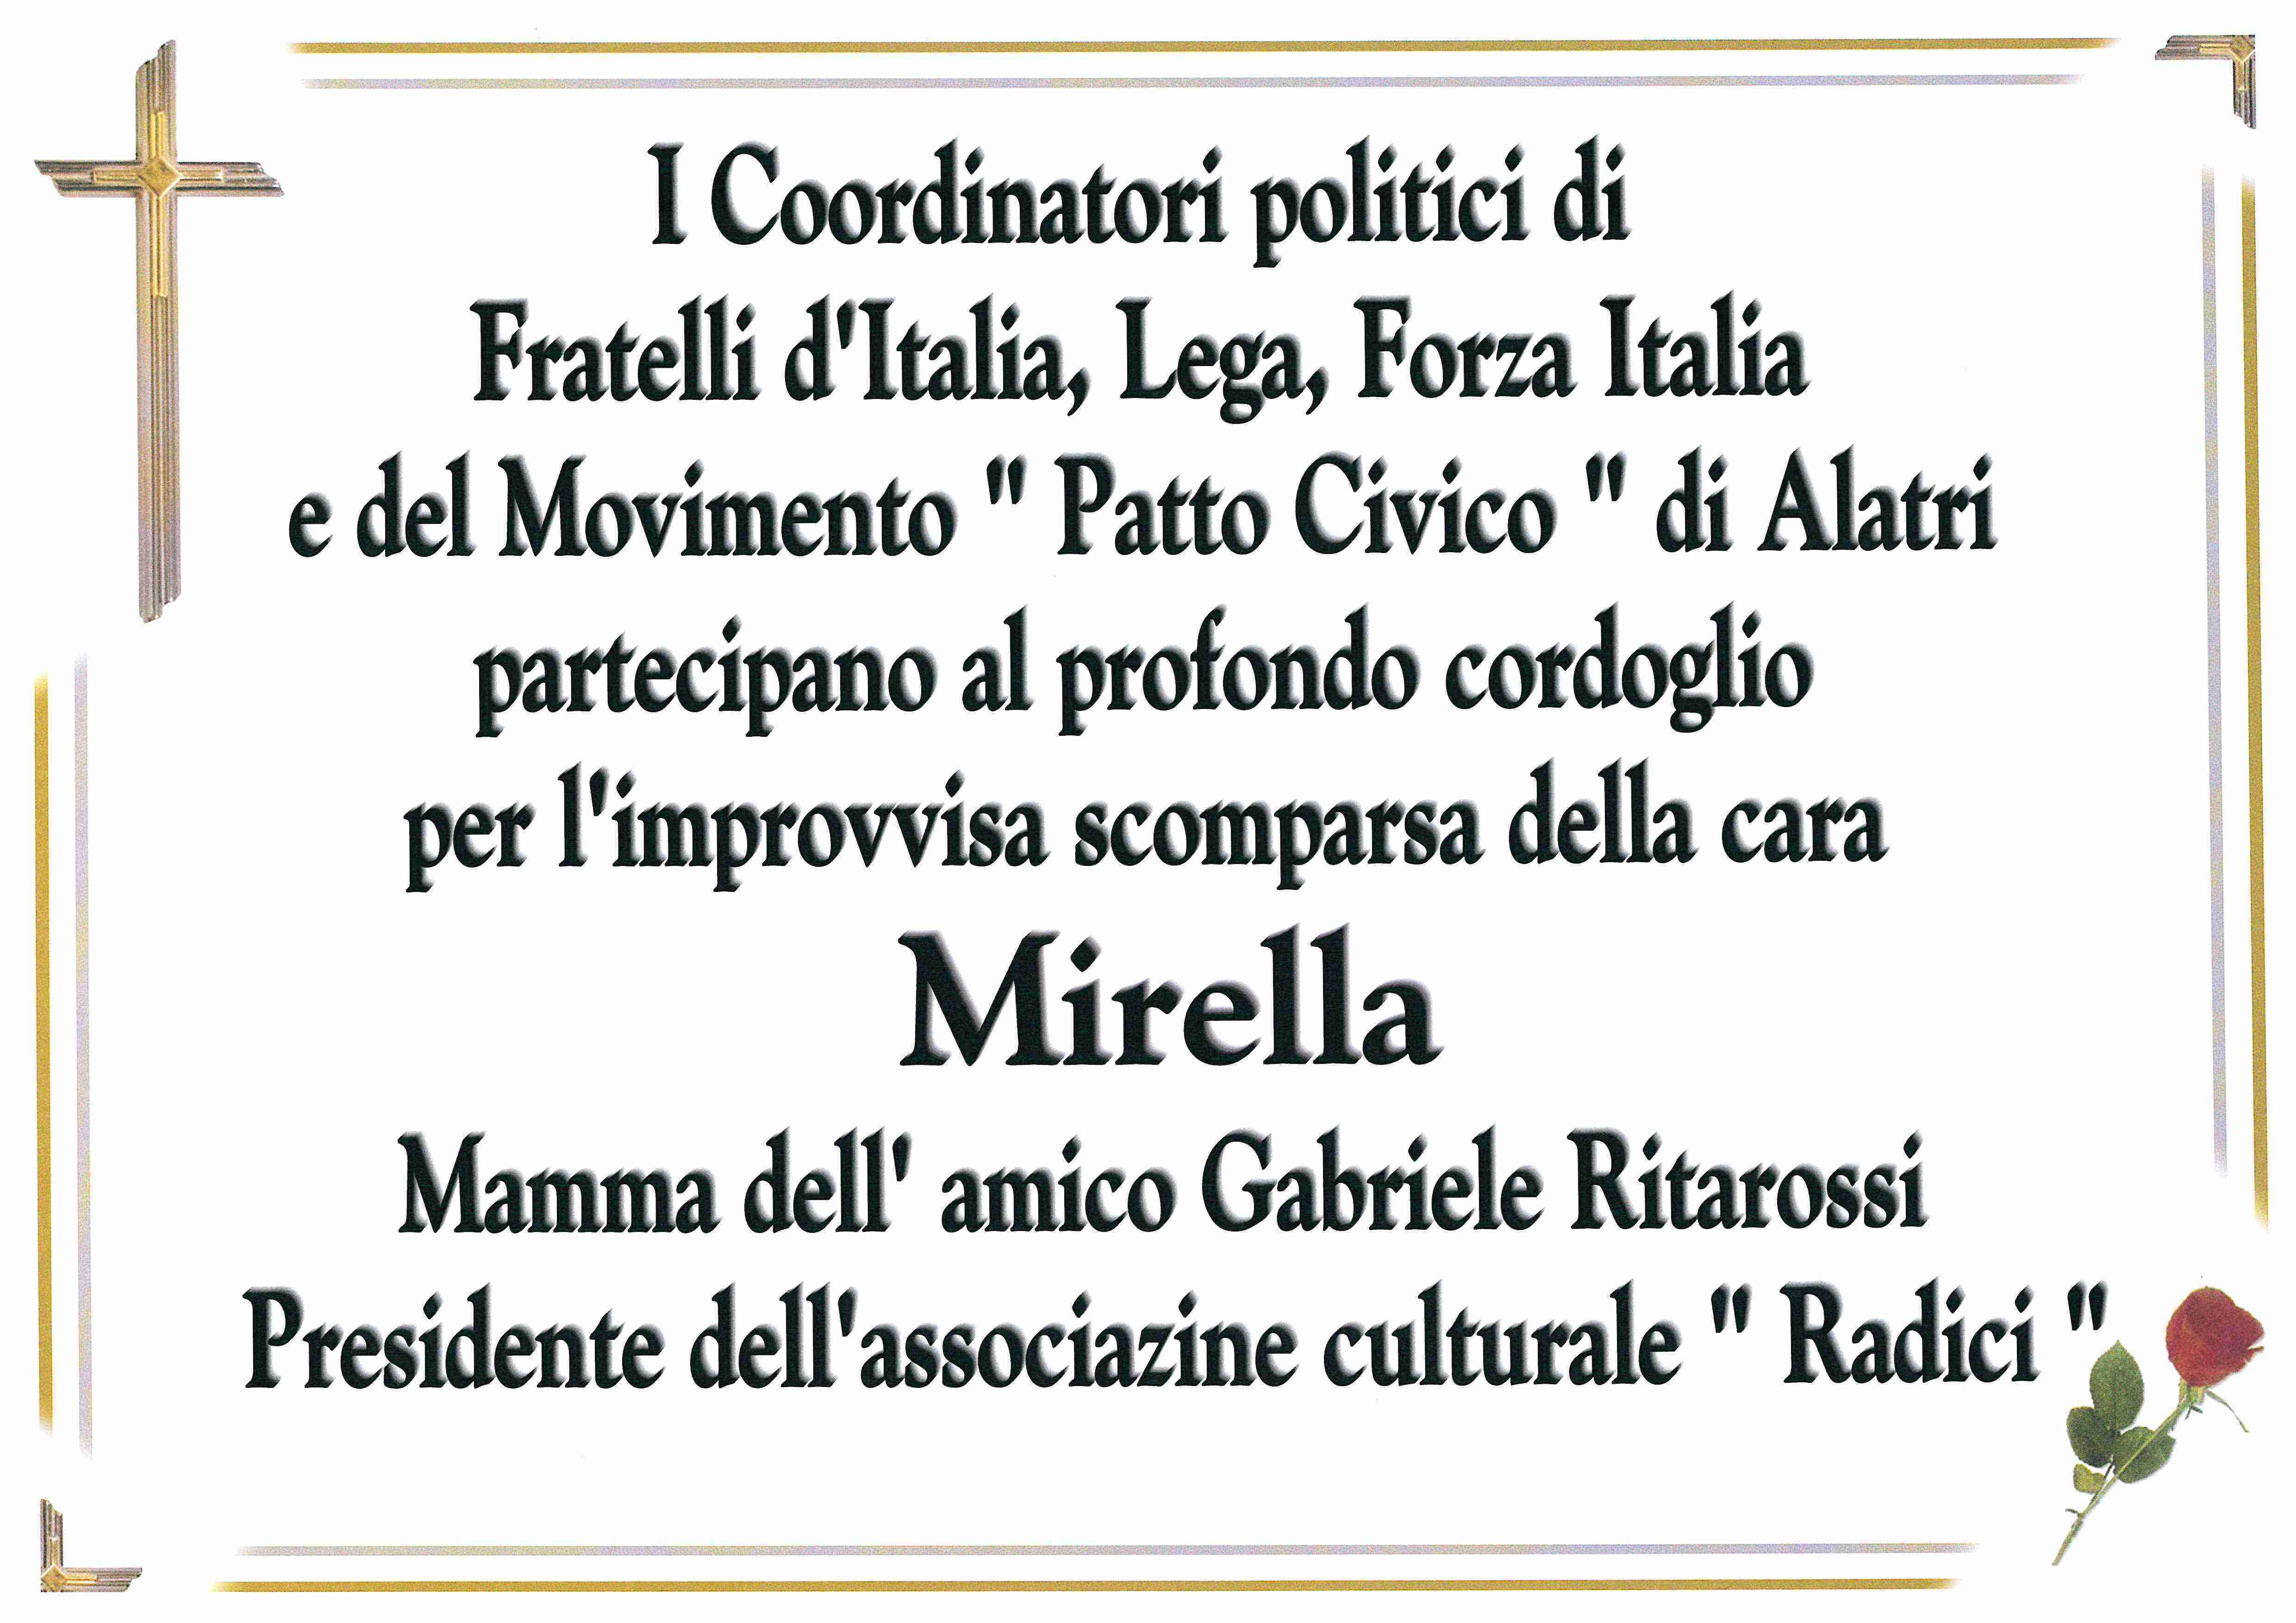 Mirella Coccia